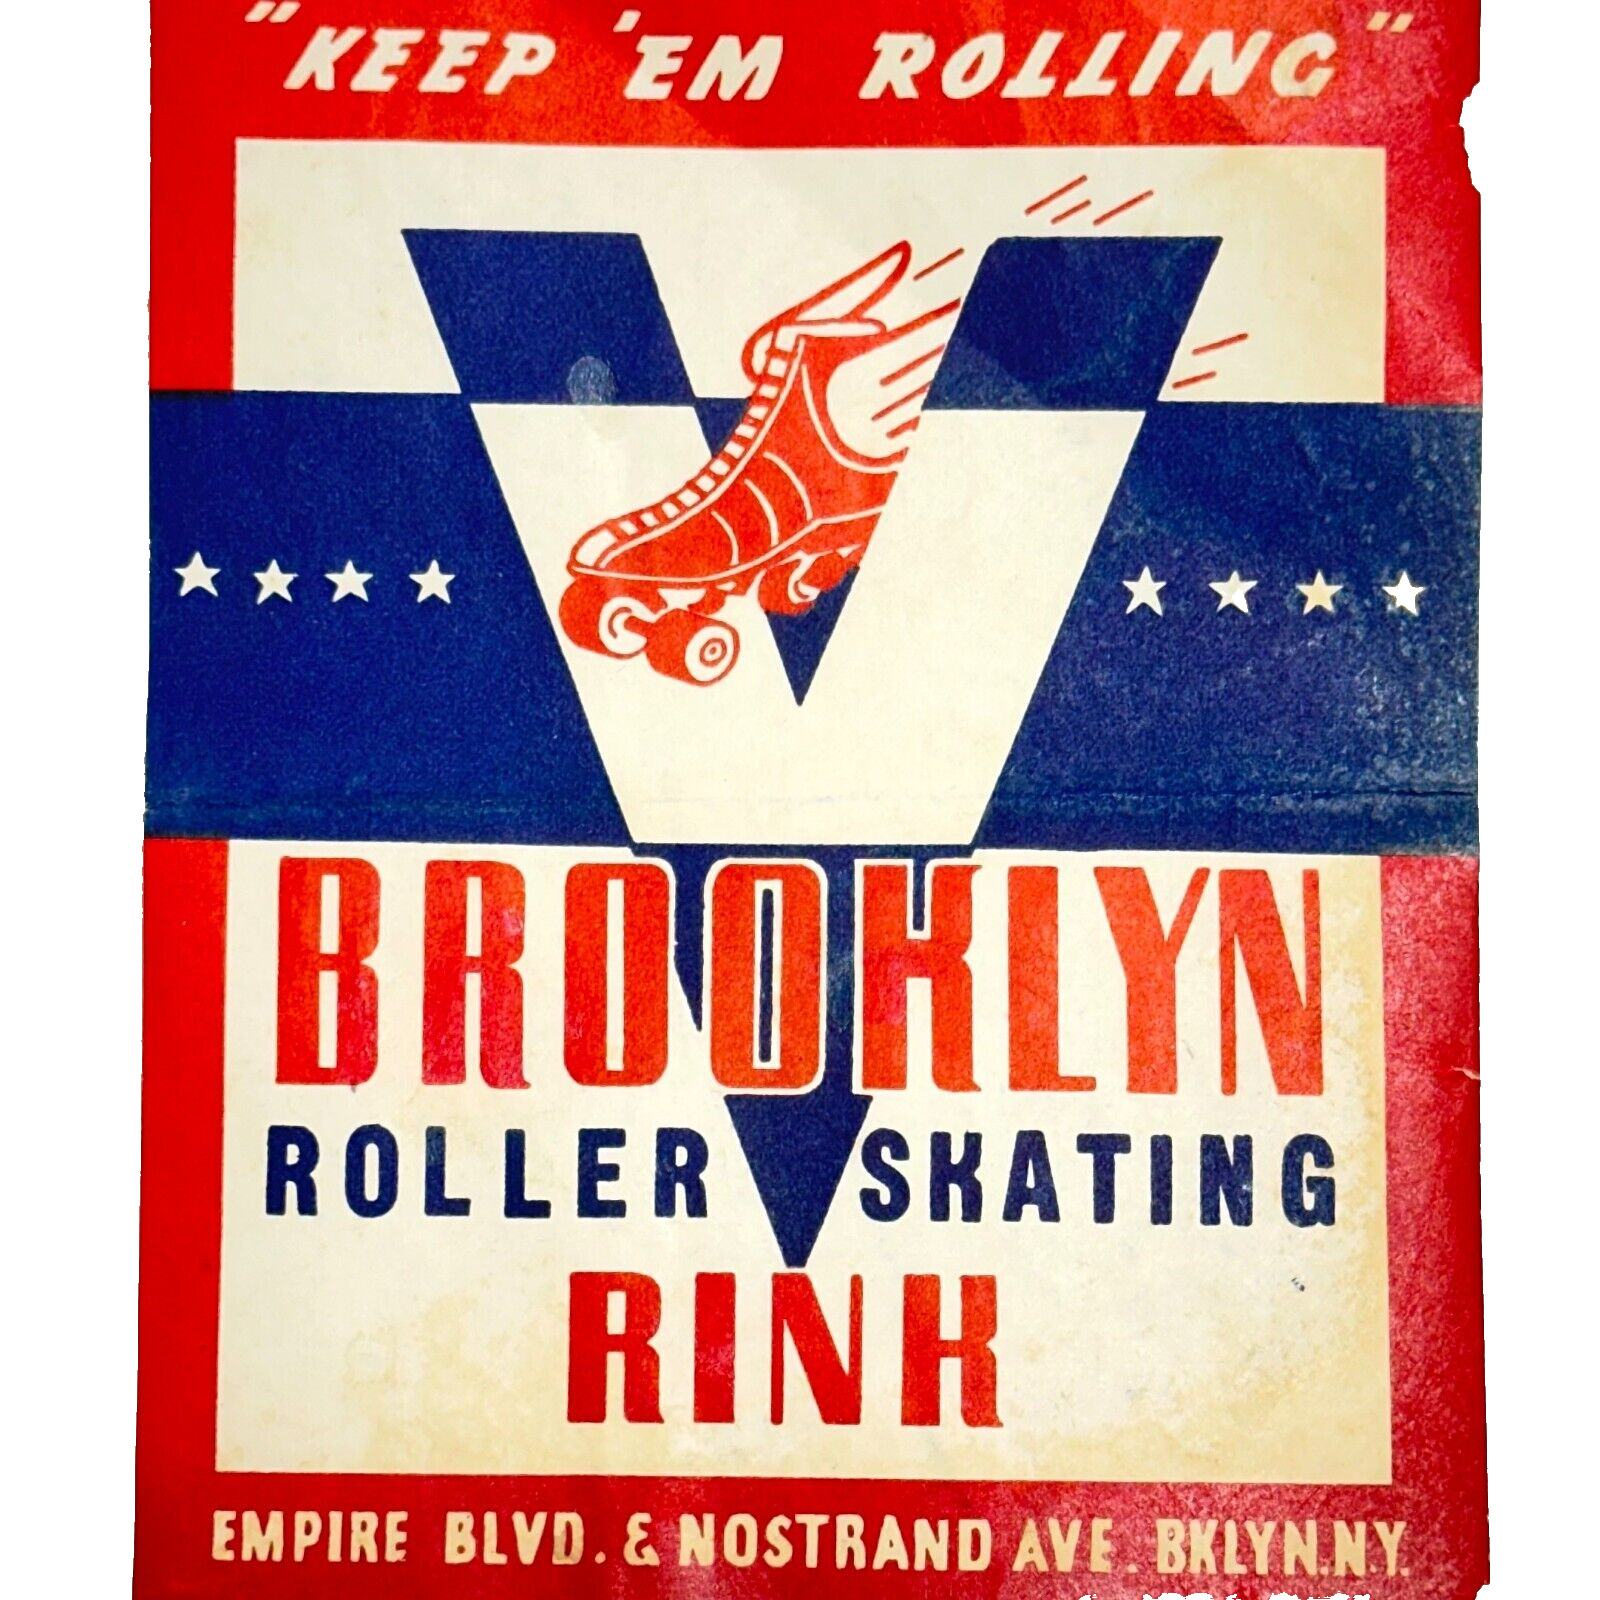 1940s Roller Skating Label Brooklyn Roller Skating Rink Keep Em Rolling \